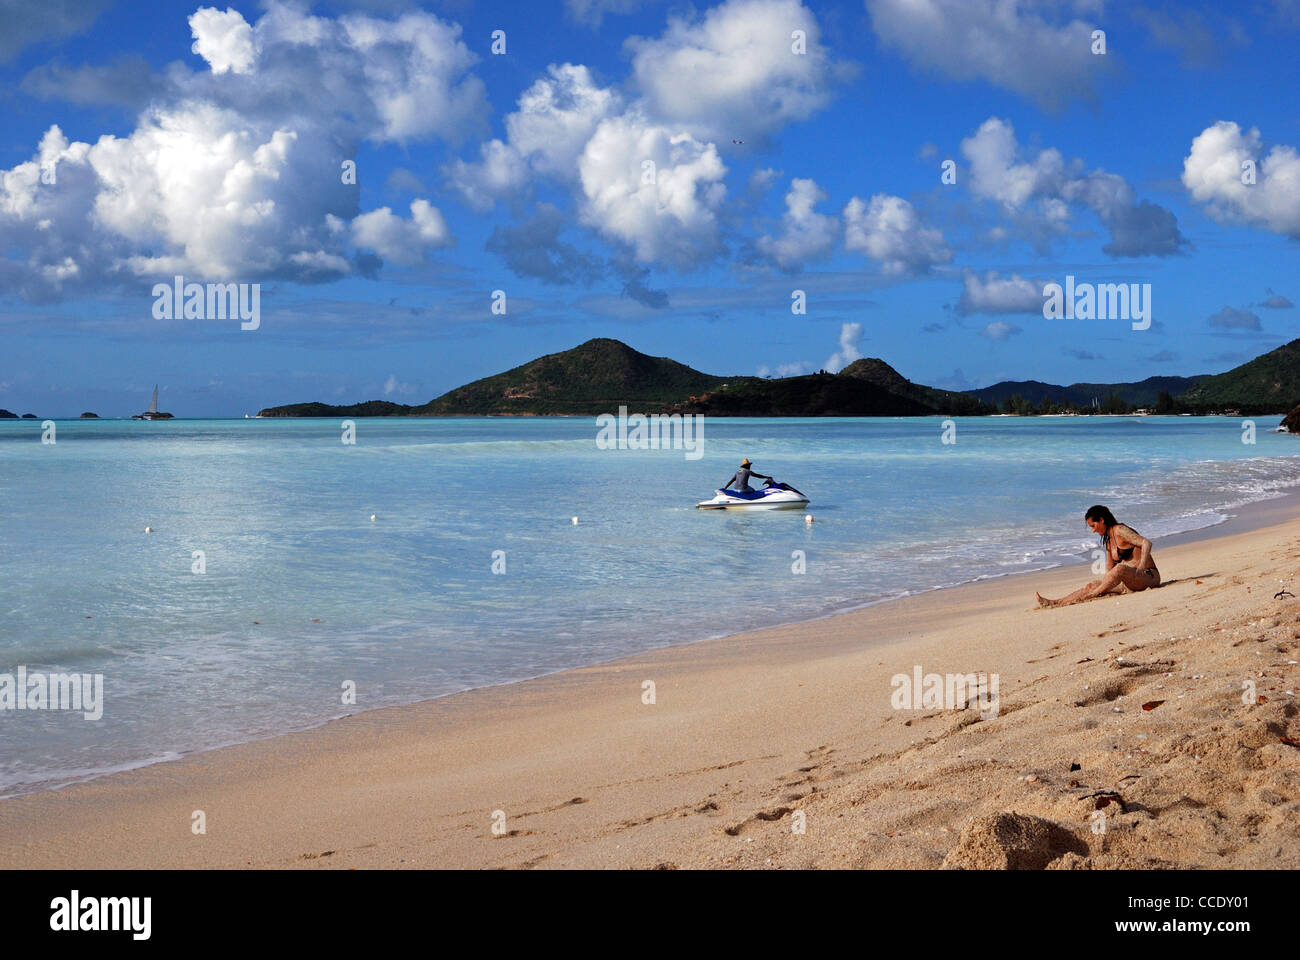 Vista a lo largo de la playa, St. Johns, Antigua, Islas de Sotavento, Caribe, West Indies. Foto de stock